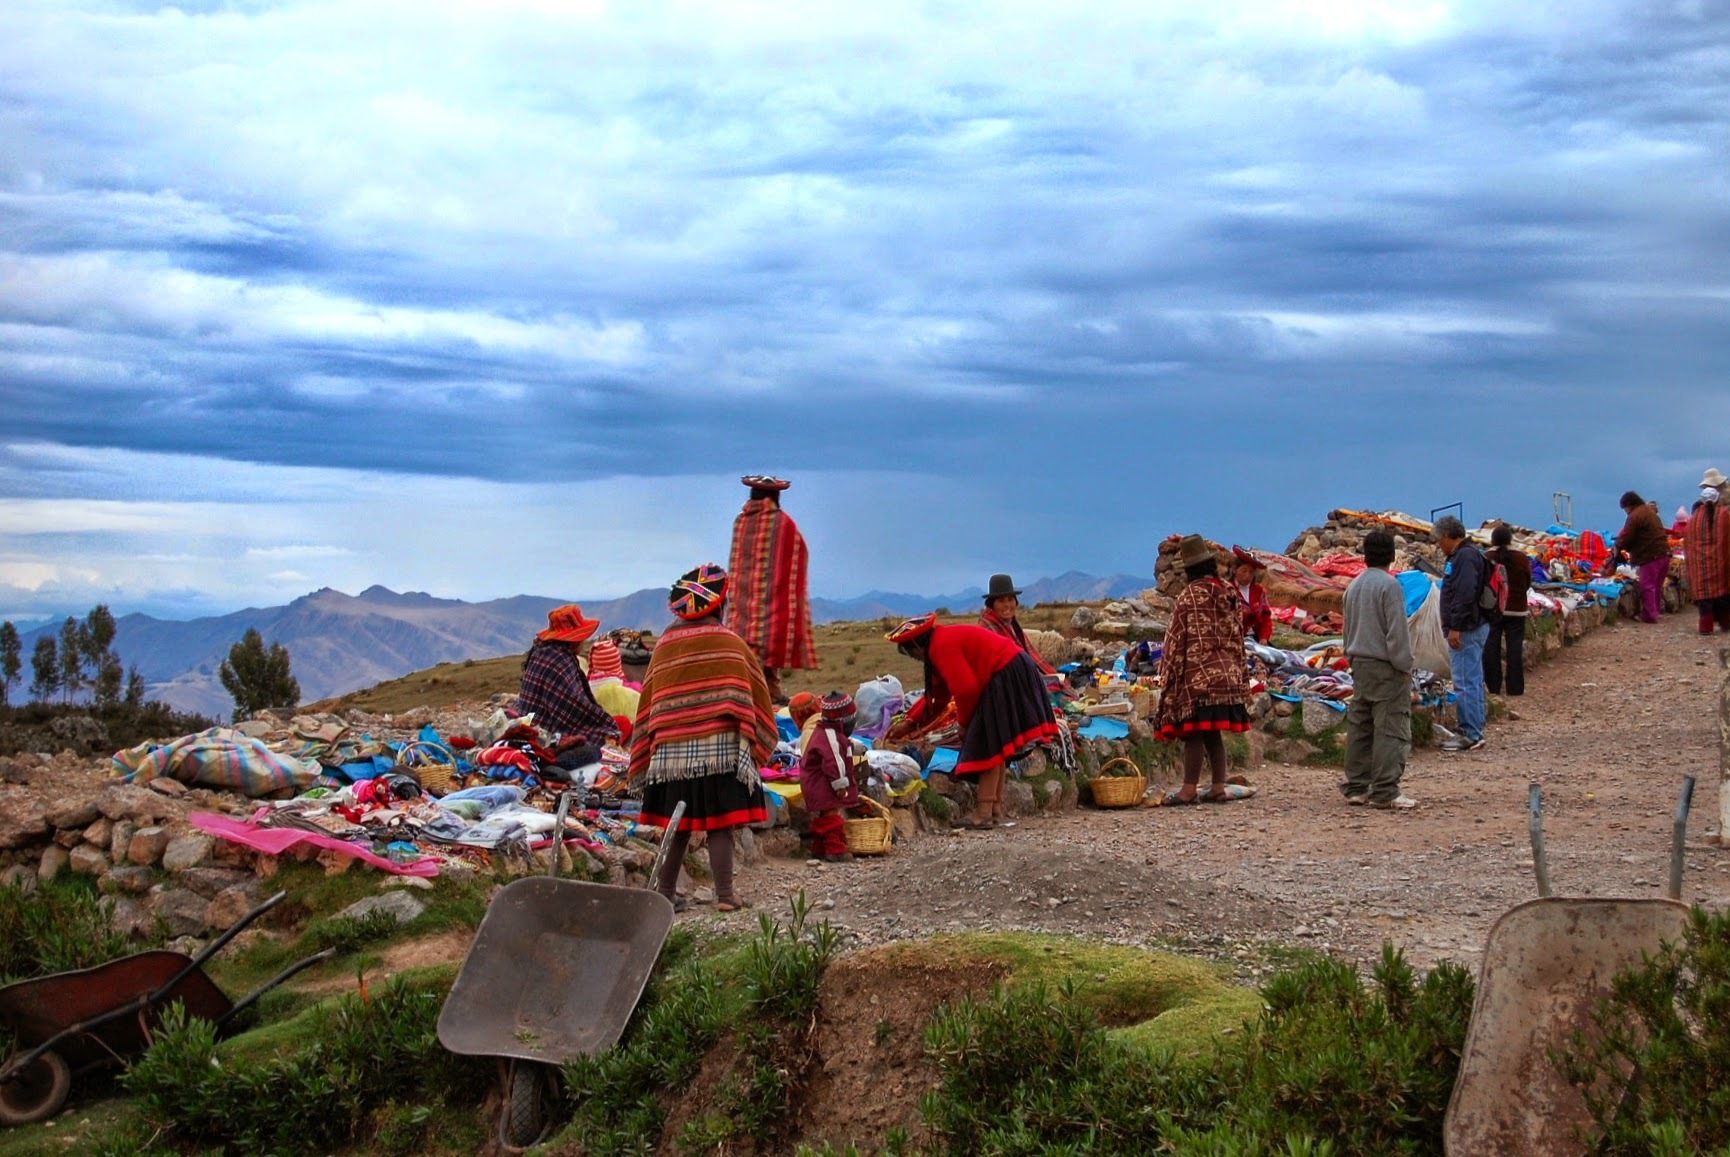 Cuzco - okolice